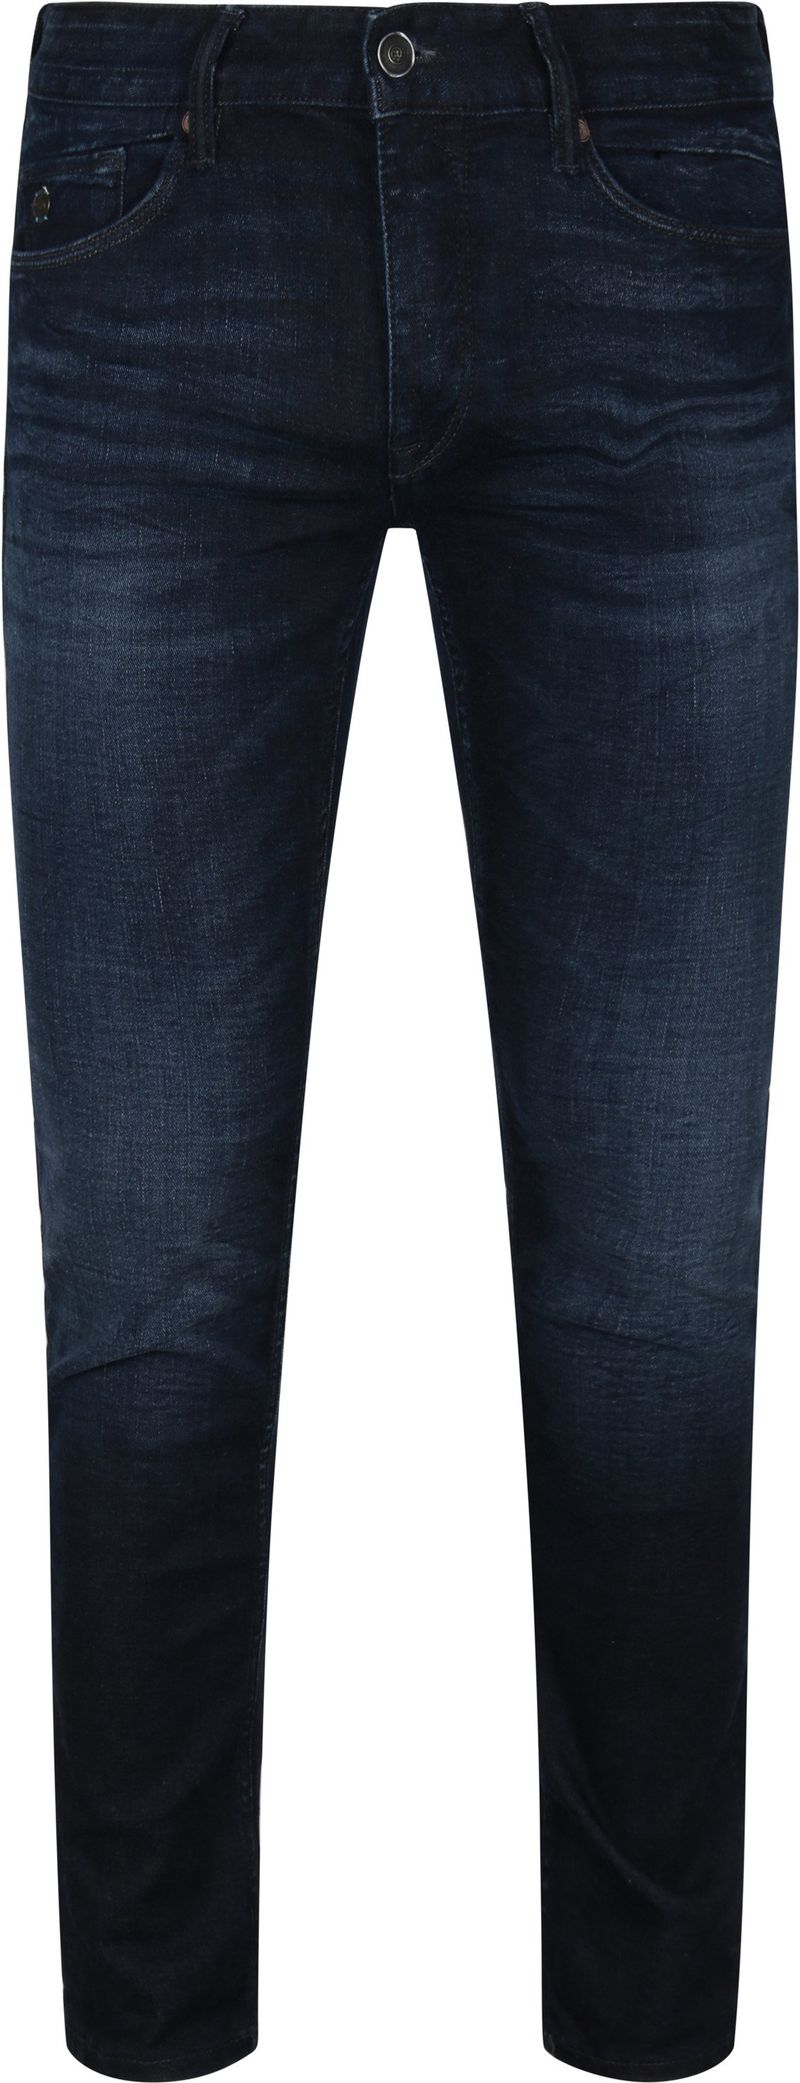 Cast Iron Riser Jeans Dunkelblau - Größe W 36 - L 34 von Cast Iron